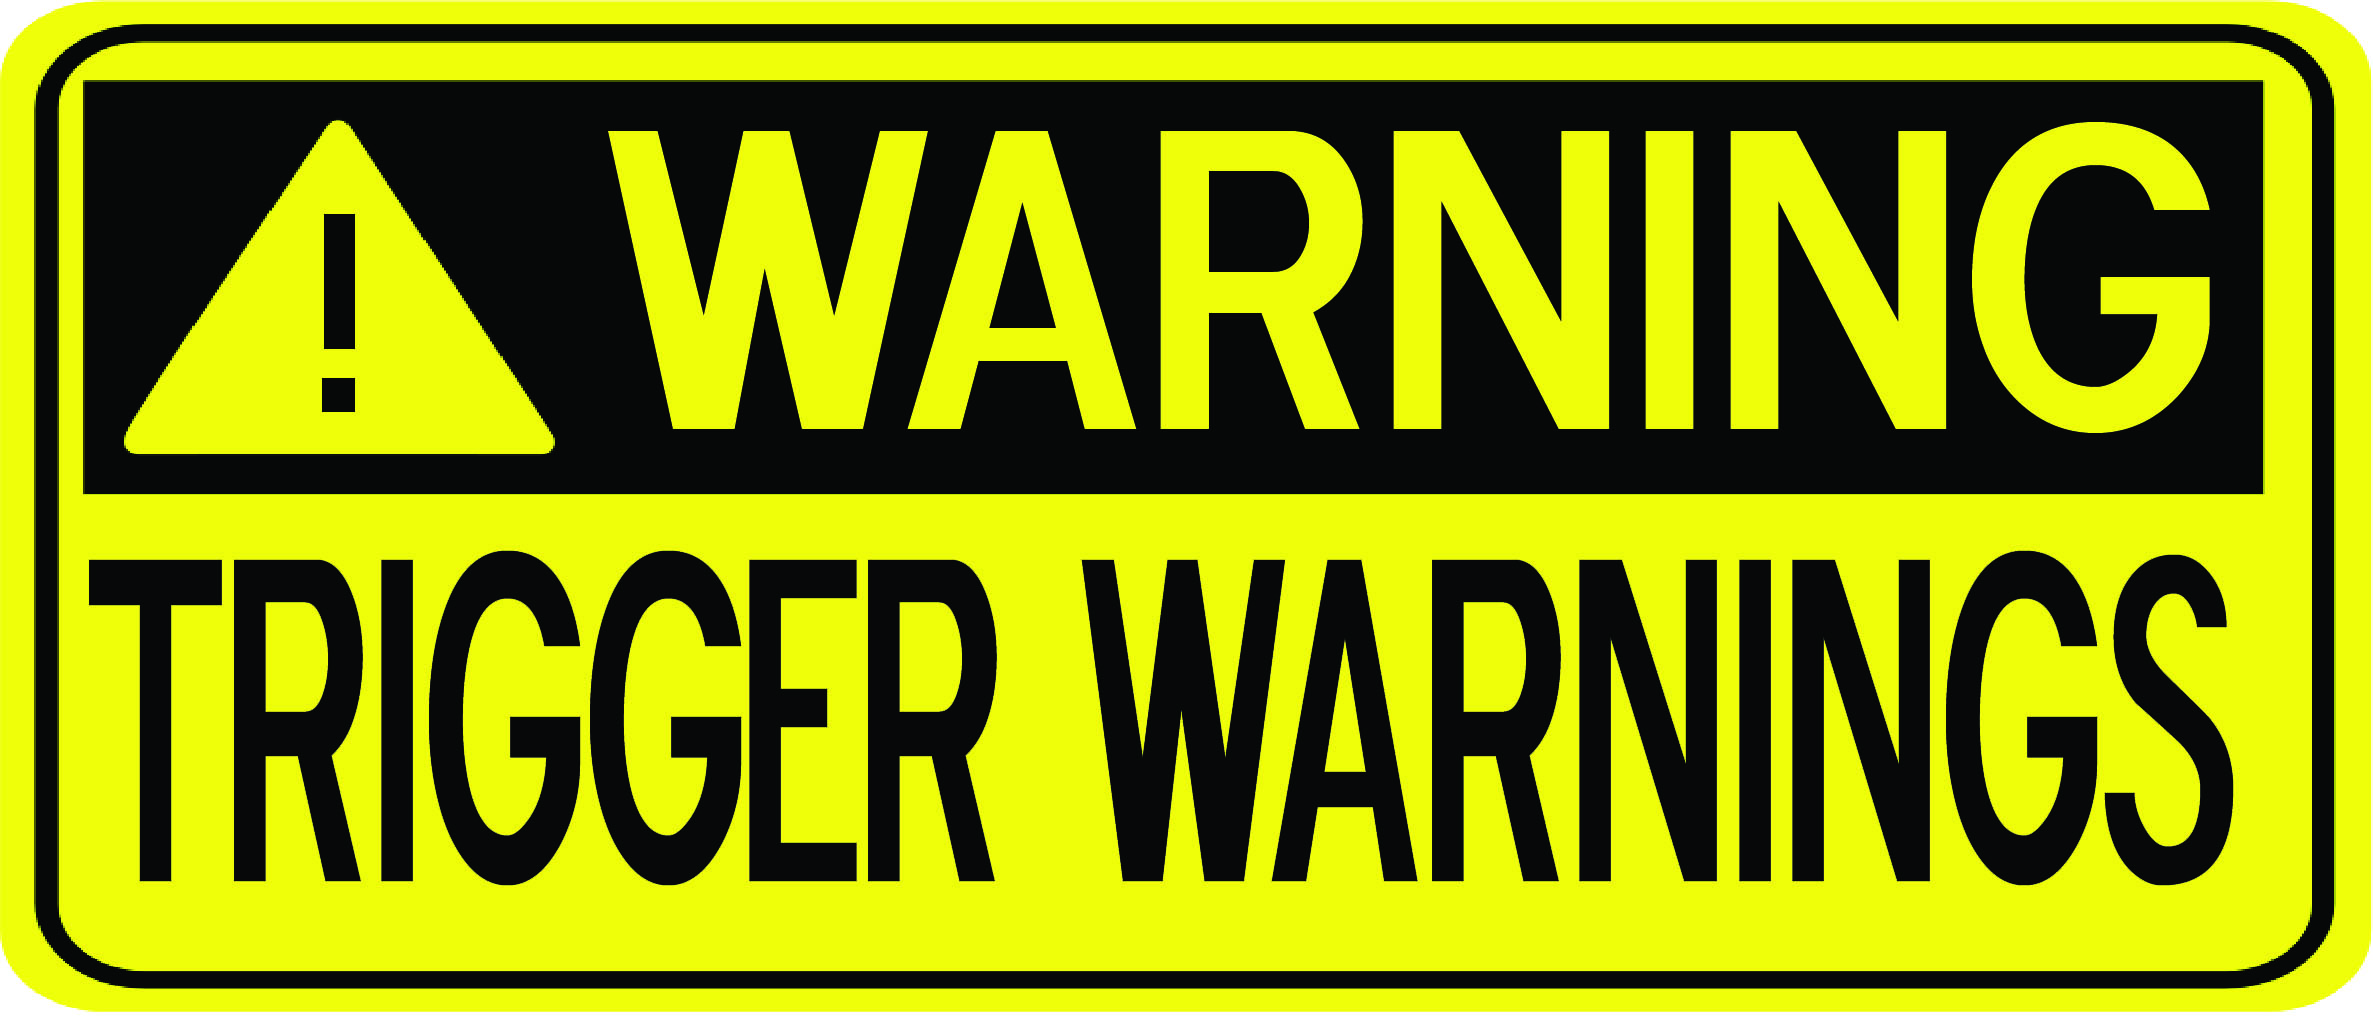 Warning Trigger Warnings 